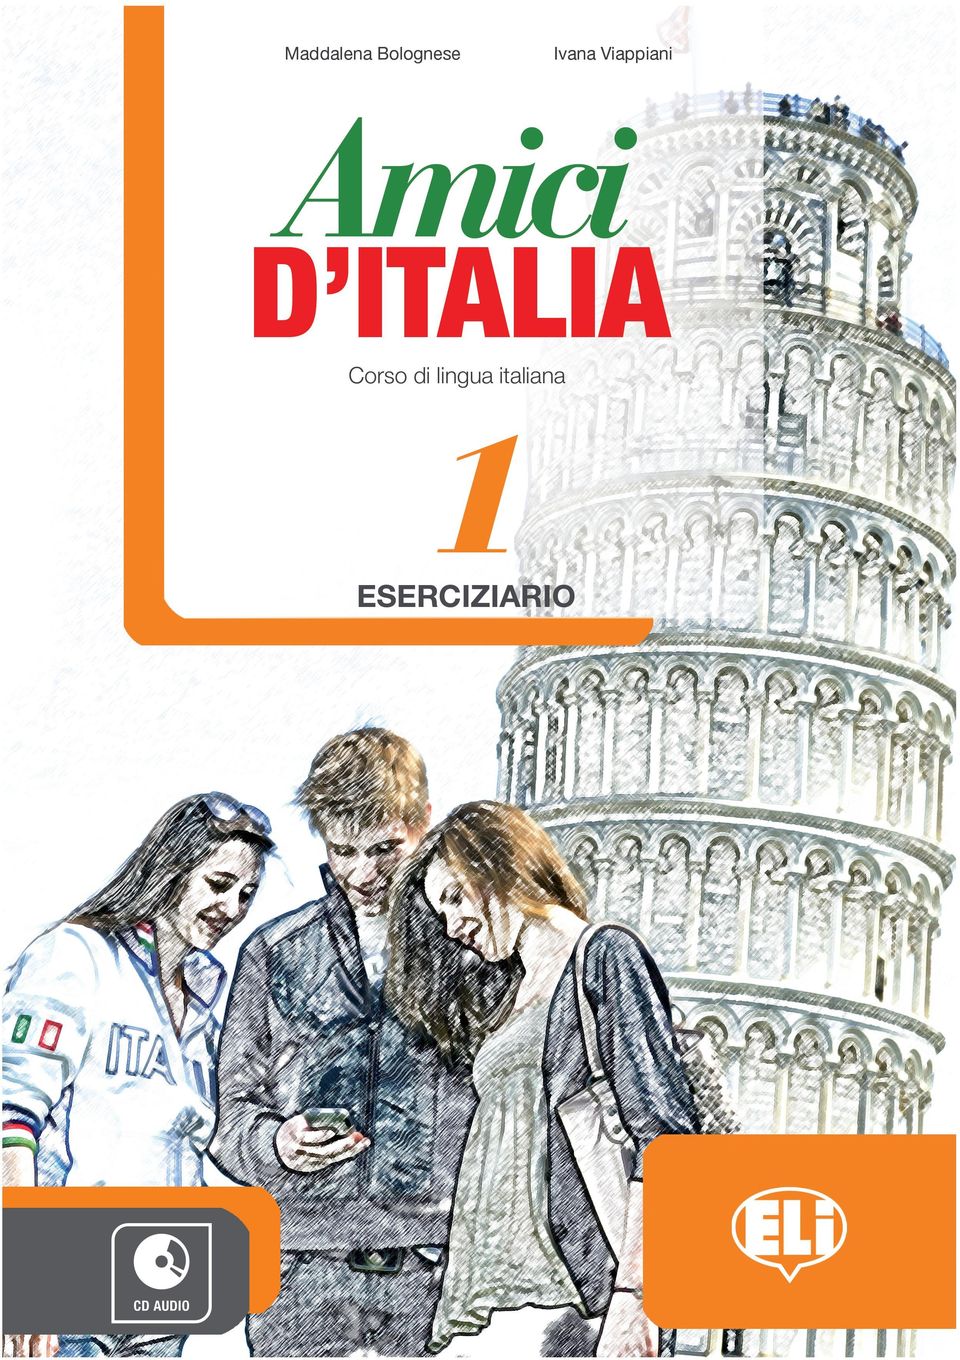 Ideale per stimolare l interesse in classe e apprendere la lingua italiana in modo semplice, completo e ricco di stimoli interattivi e culturali.